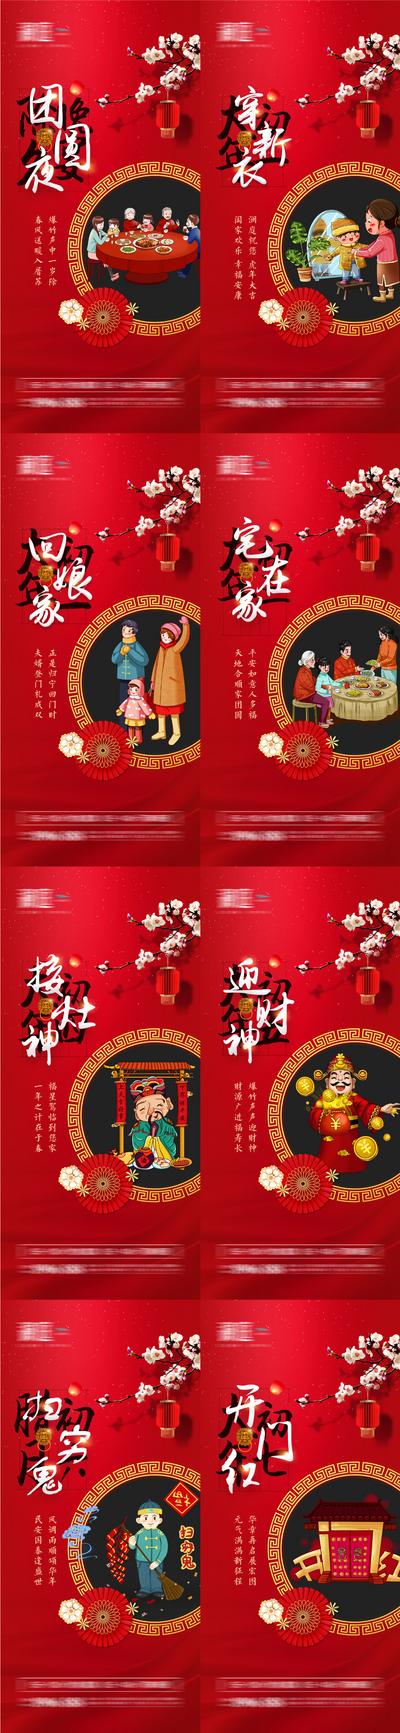 南门网 广告 海报 新年 春节 除夕 初一 初七 团圆 年味 年俗 新年 新春 拜年 大年初一 系列